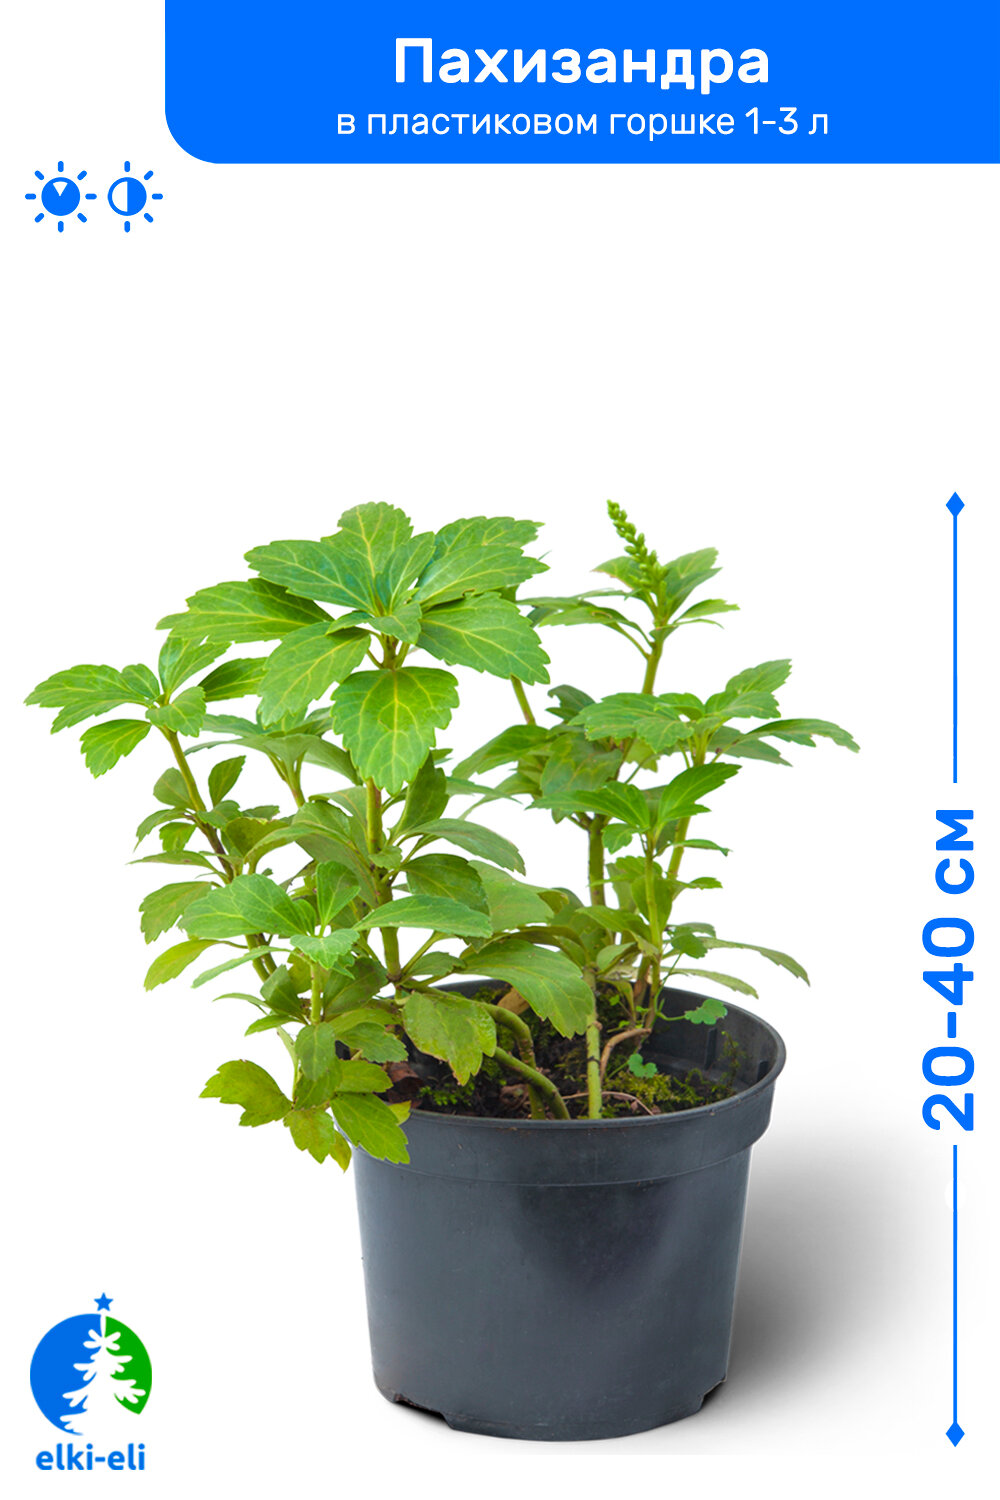 Пахизандра 20-40 см в пластиковом горшке 1-3 л саженец лиственное живое растение